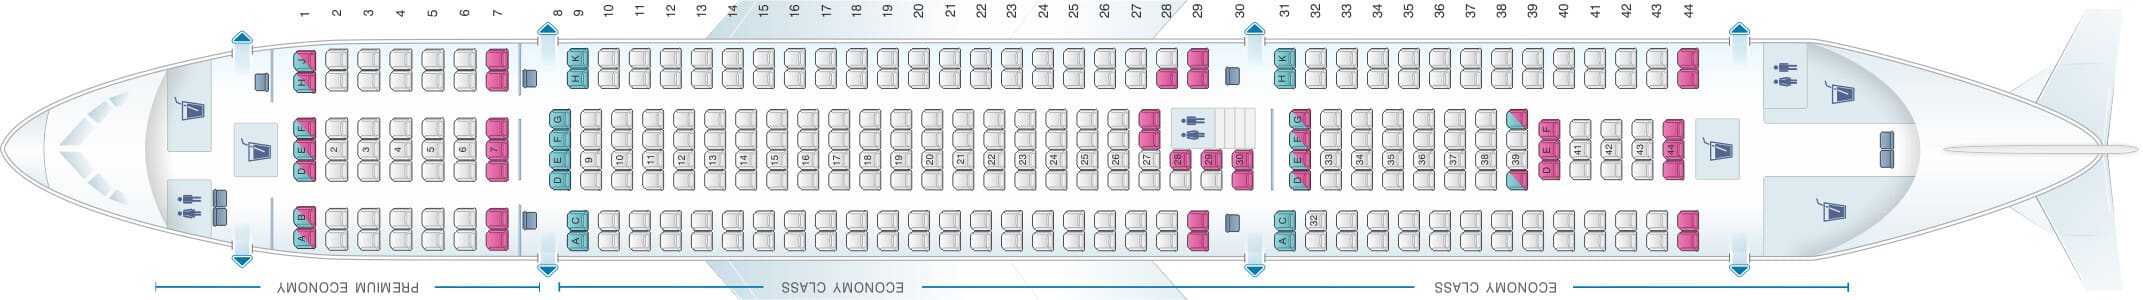 Thomas Cook Airbus A330 Seating Plan